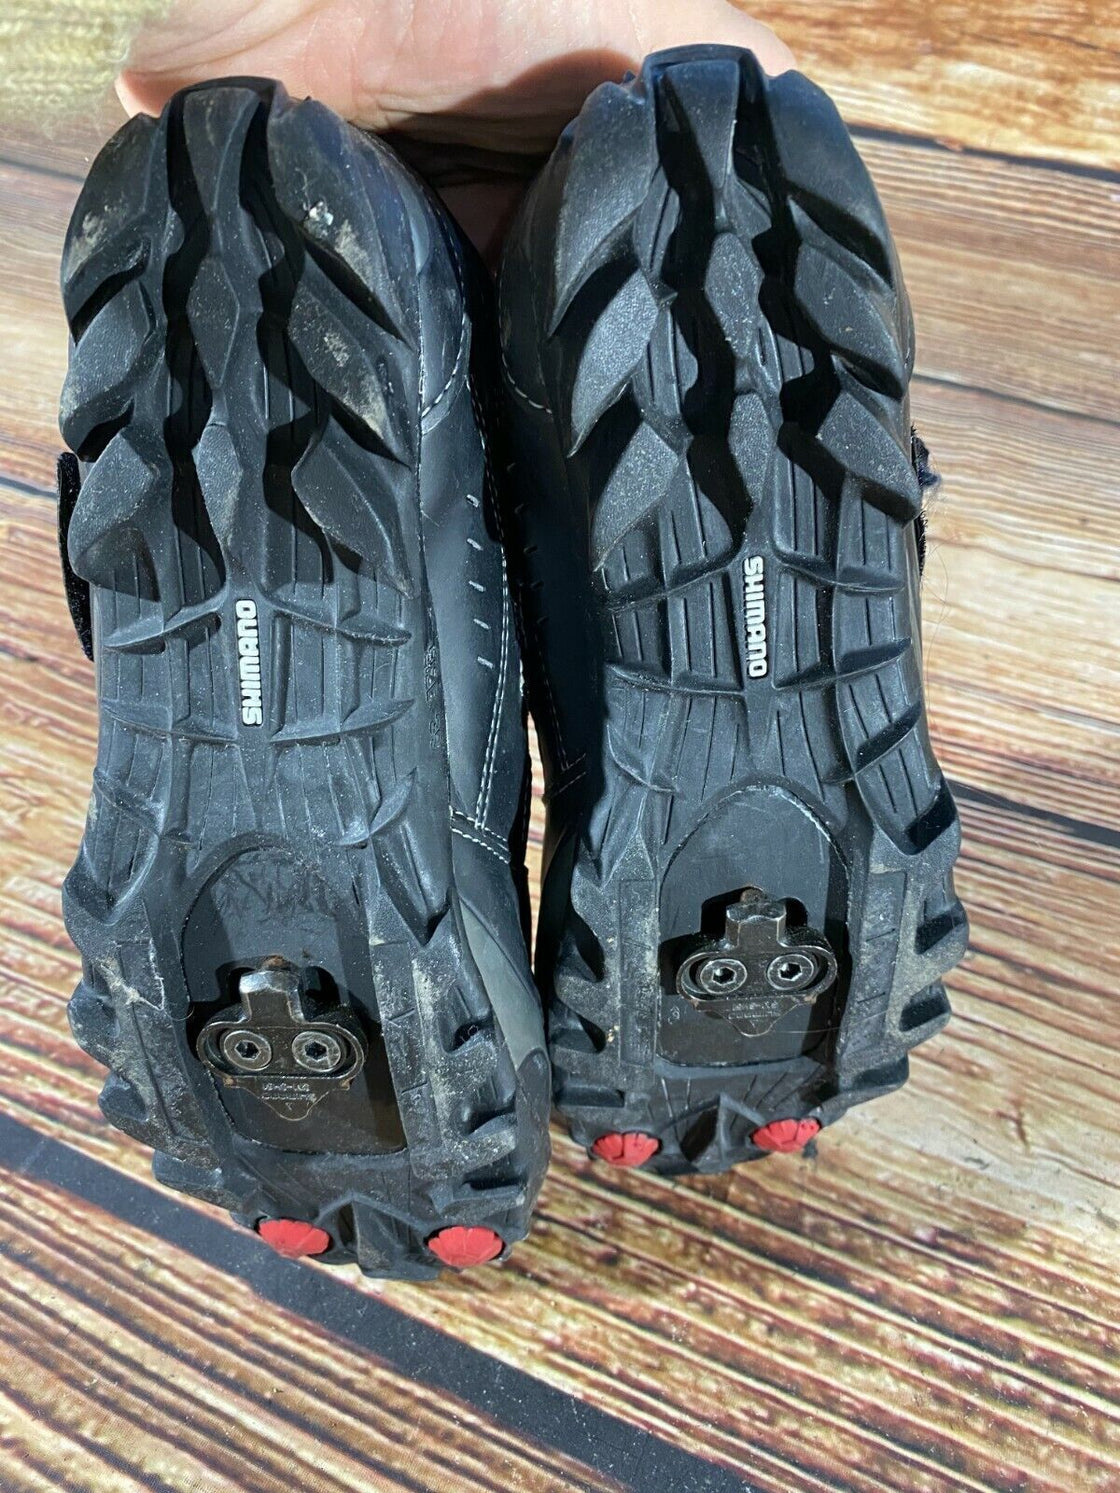 SHIMANO M064 Cycling MTB Shoes Mountain Biking Boots Size EU39 with Cleats